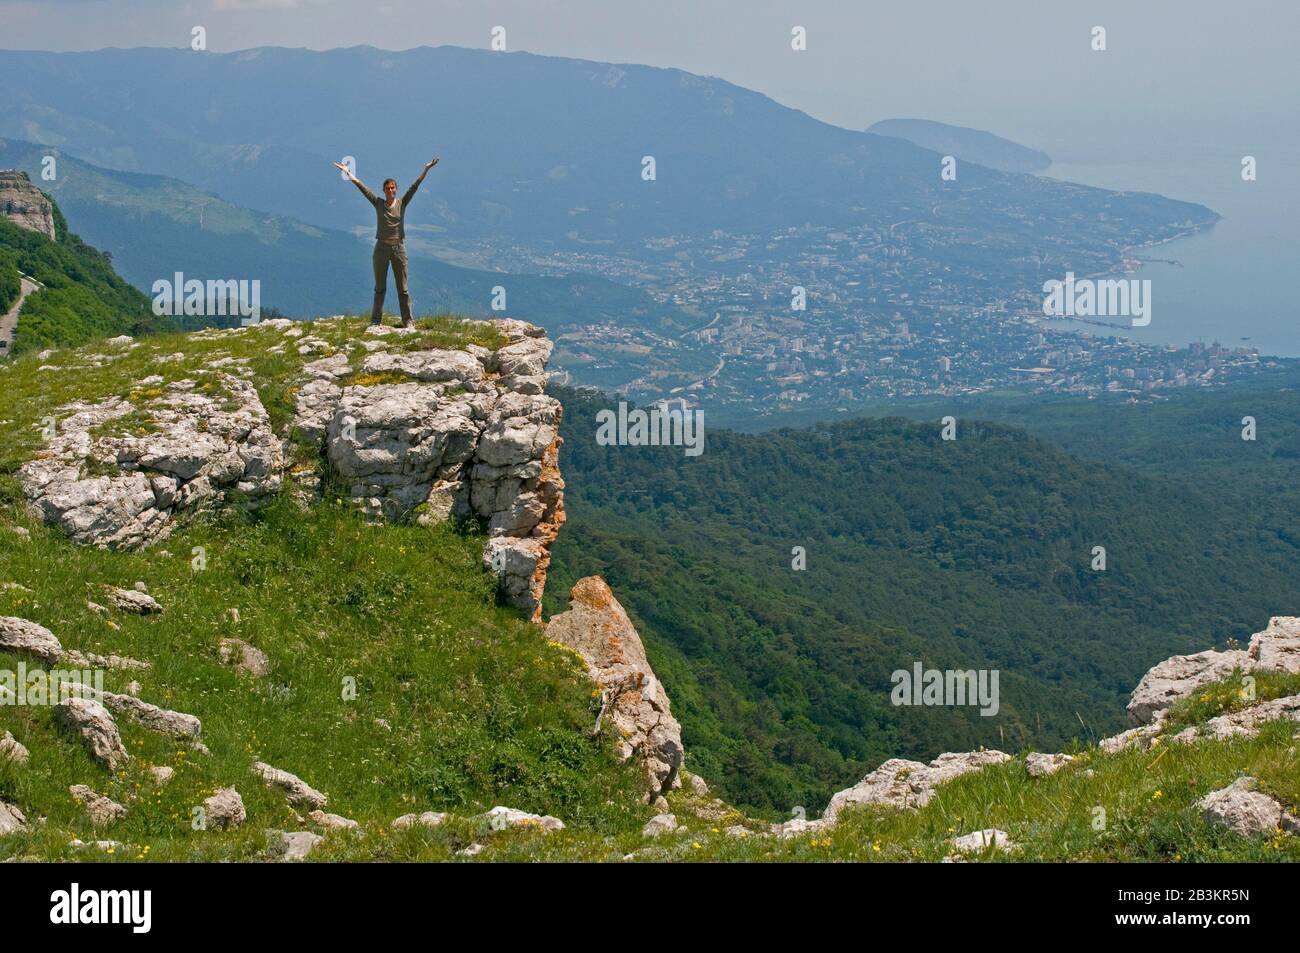 La jeune femme se tient au bord d'Ay-Petri Yayla (dans les montagnes de Crimée). La ville de Yalta, le mont Ayu-Dag et la mer sont en arrière-plan. Banque D'Images